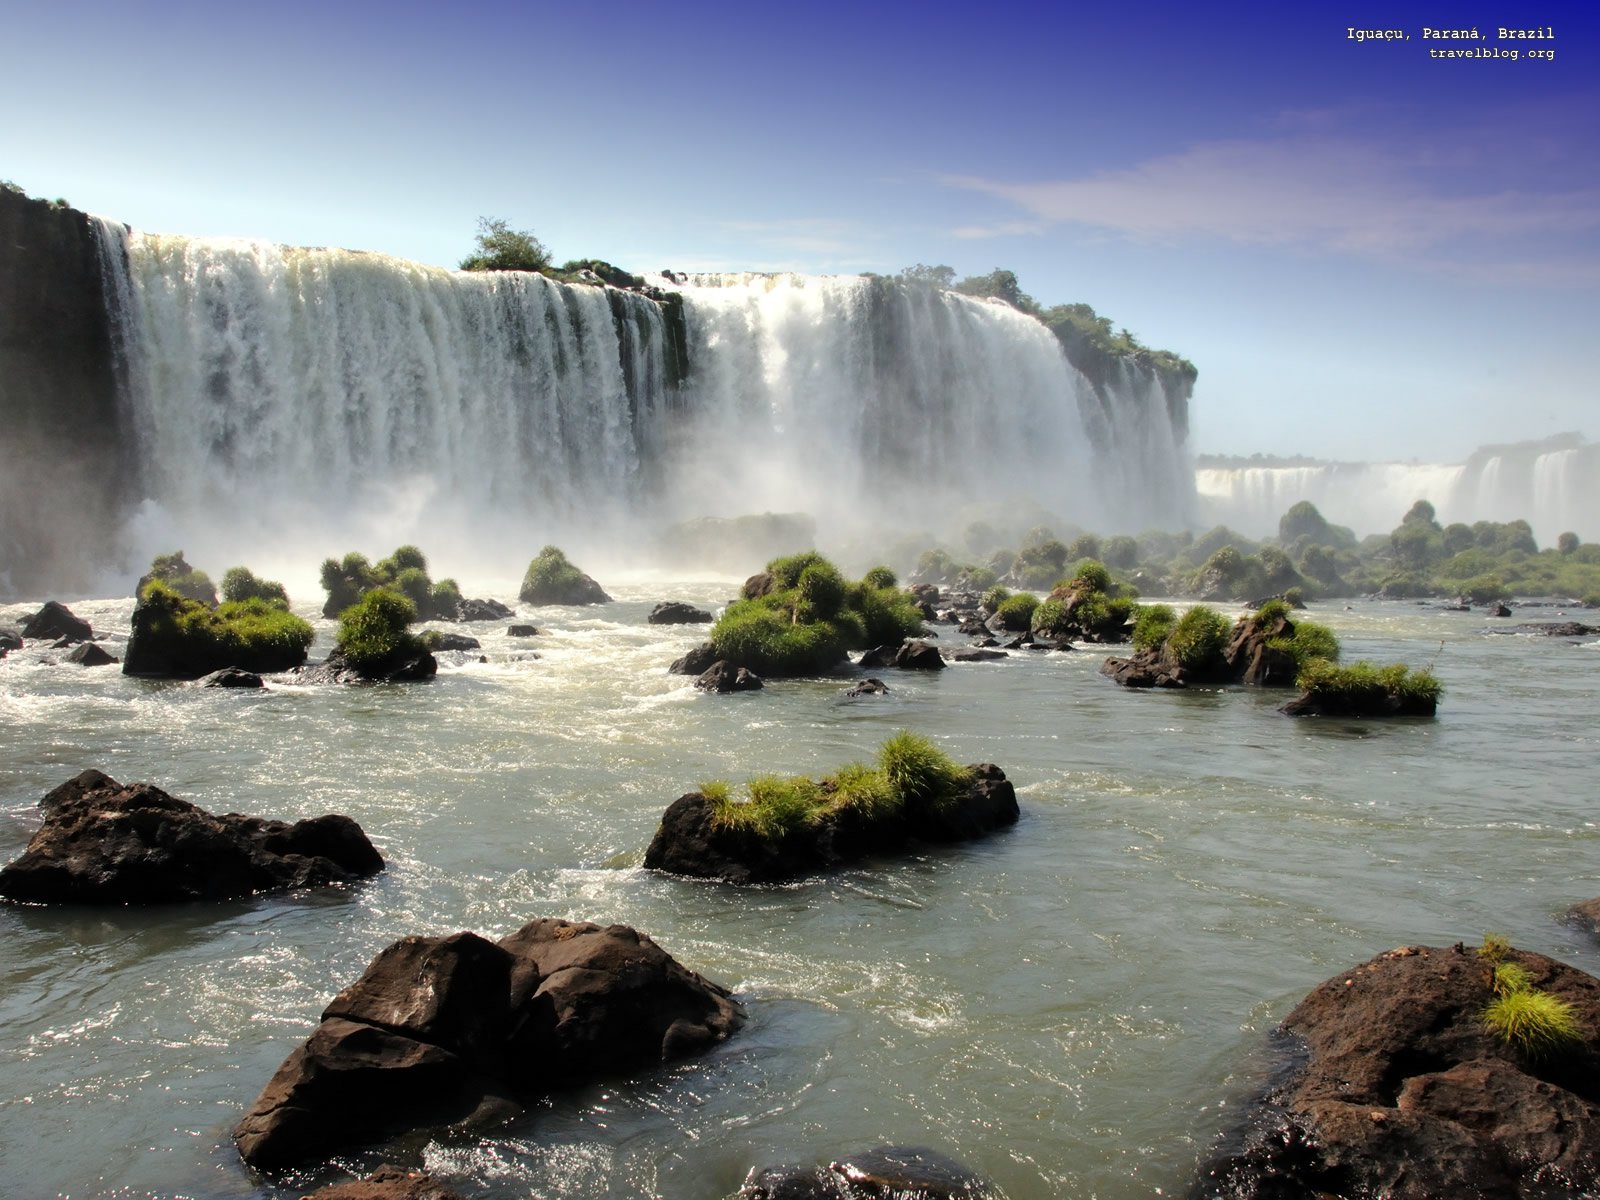 Amazing water fall